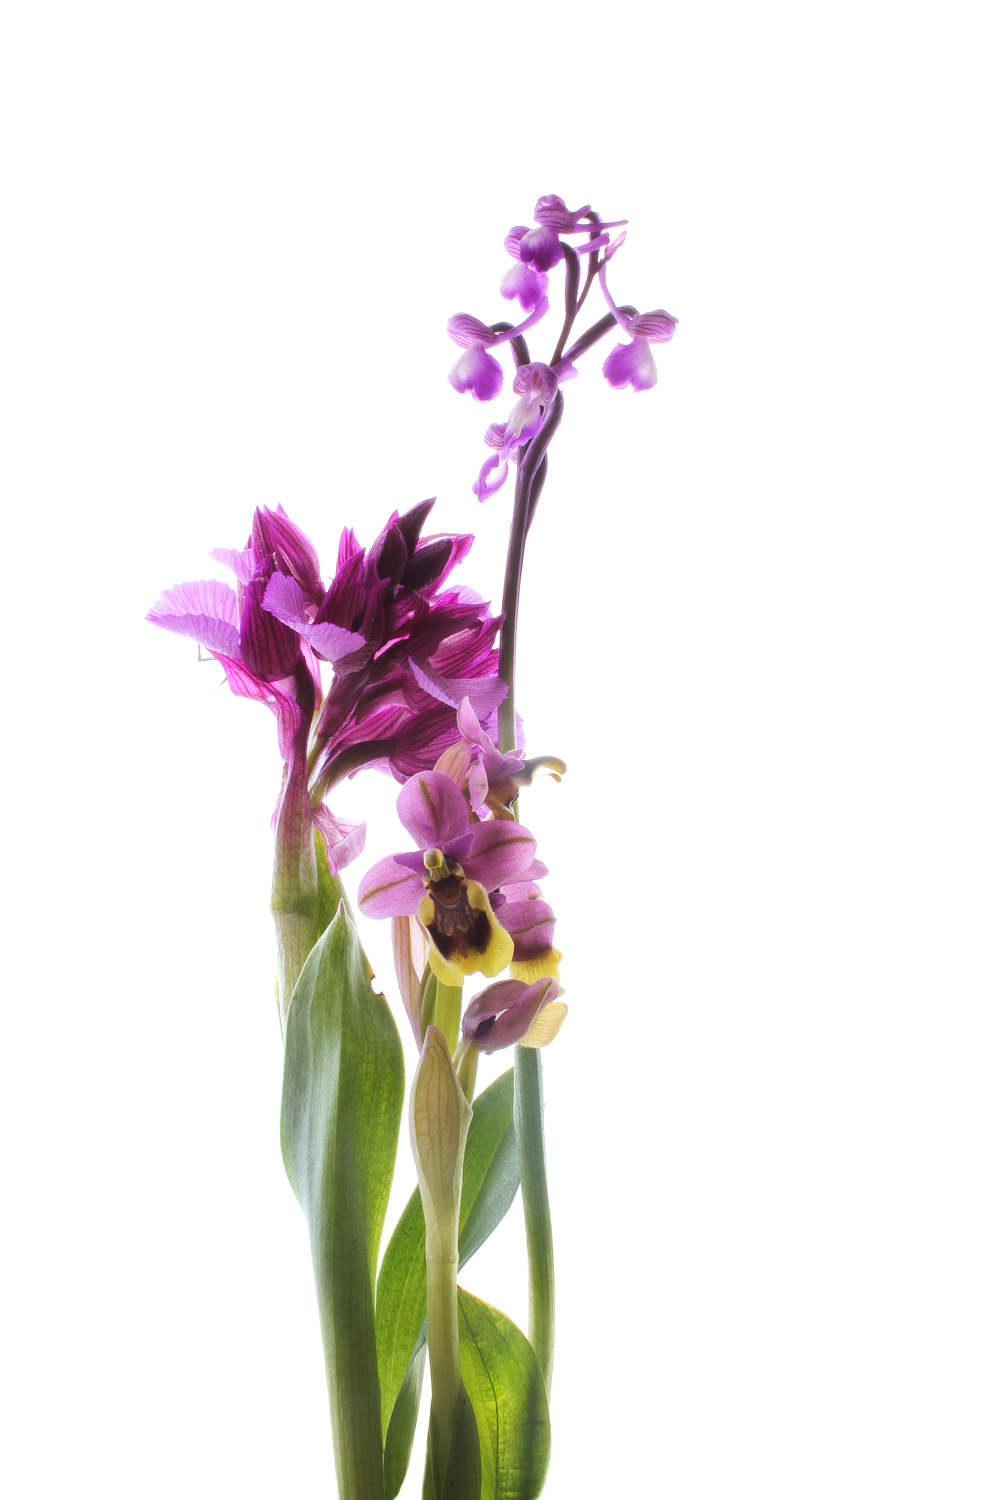 647 orquídeas